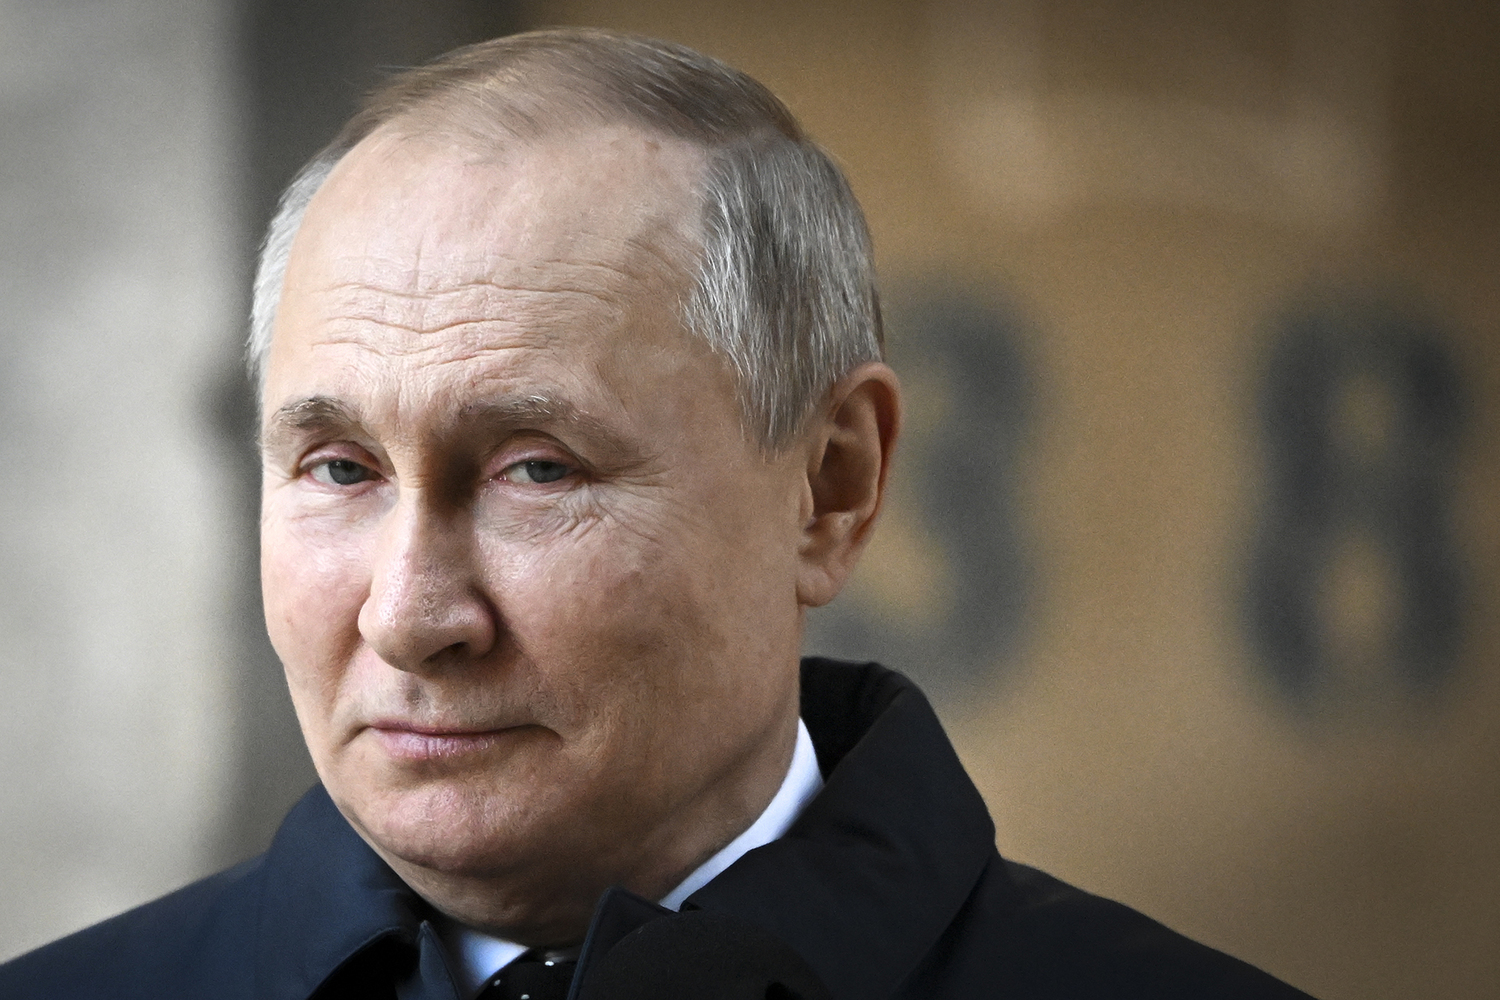 24 июня 2023 года Путин из политика России №1 стал величиной стремящейся к нулю. Можно сказать, что он подвёл черту под эпохой своего политического доминирования. Эпоха закончилась